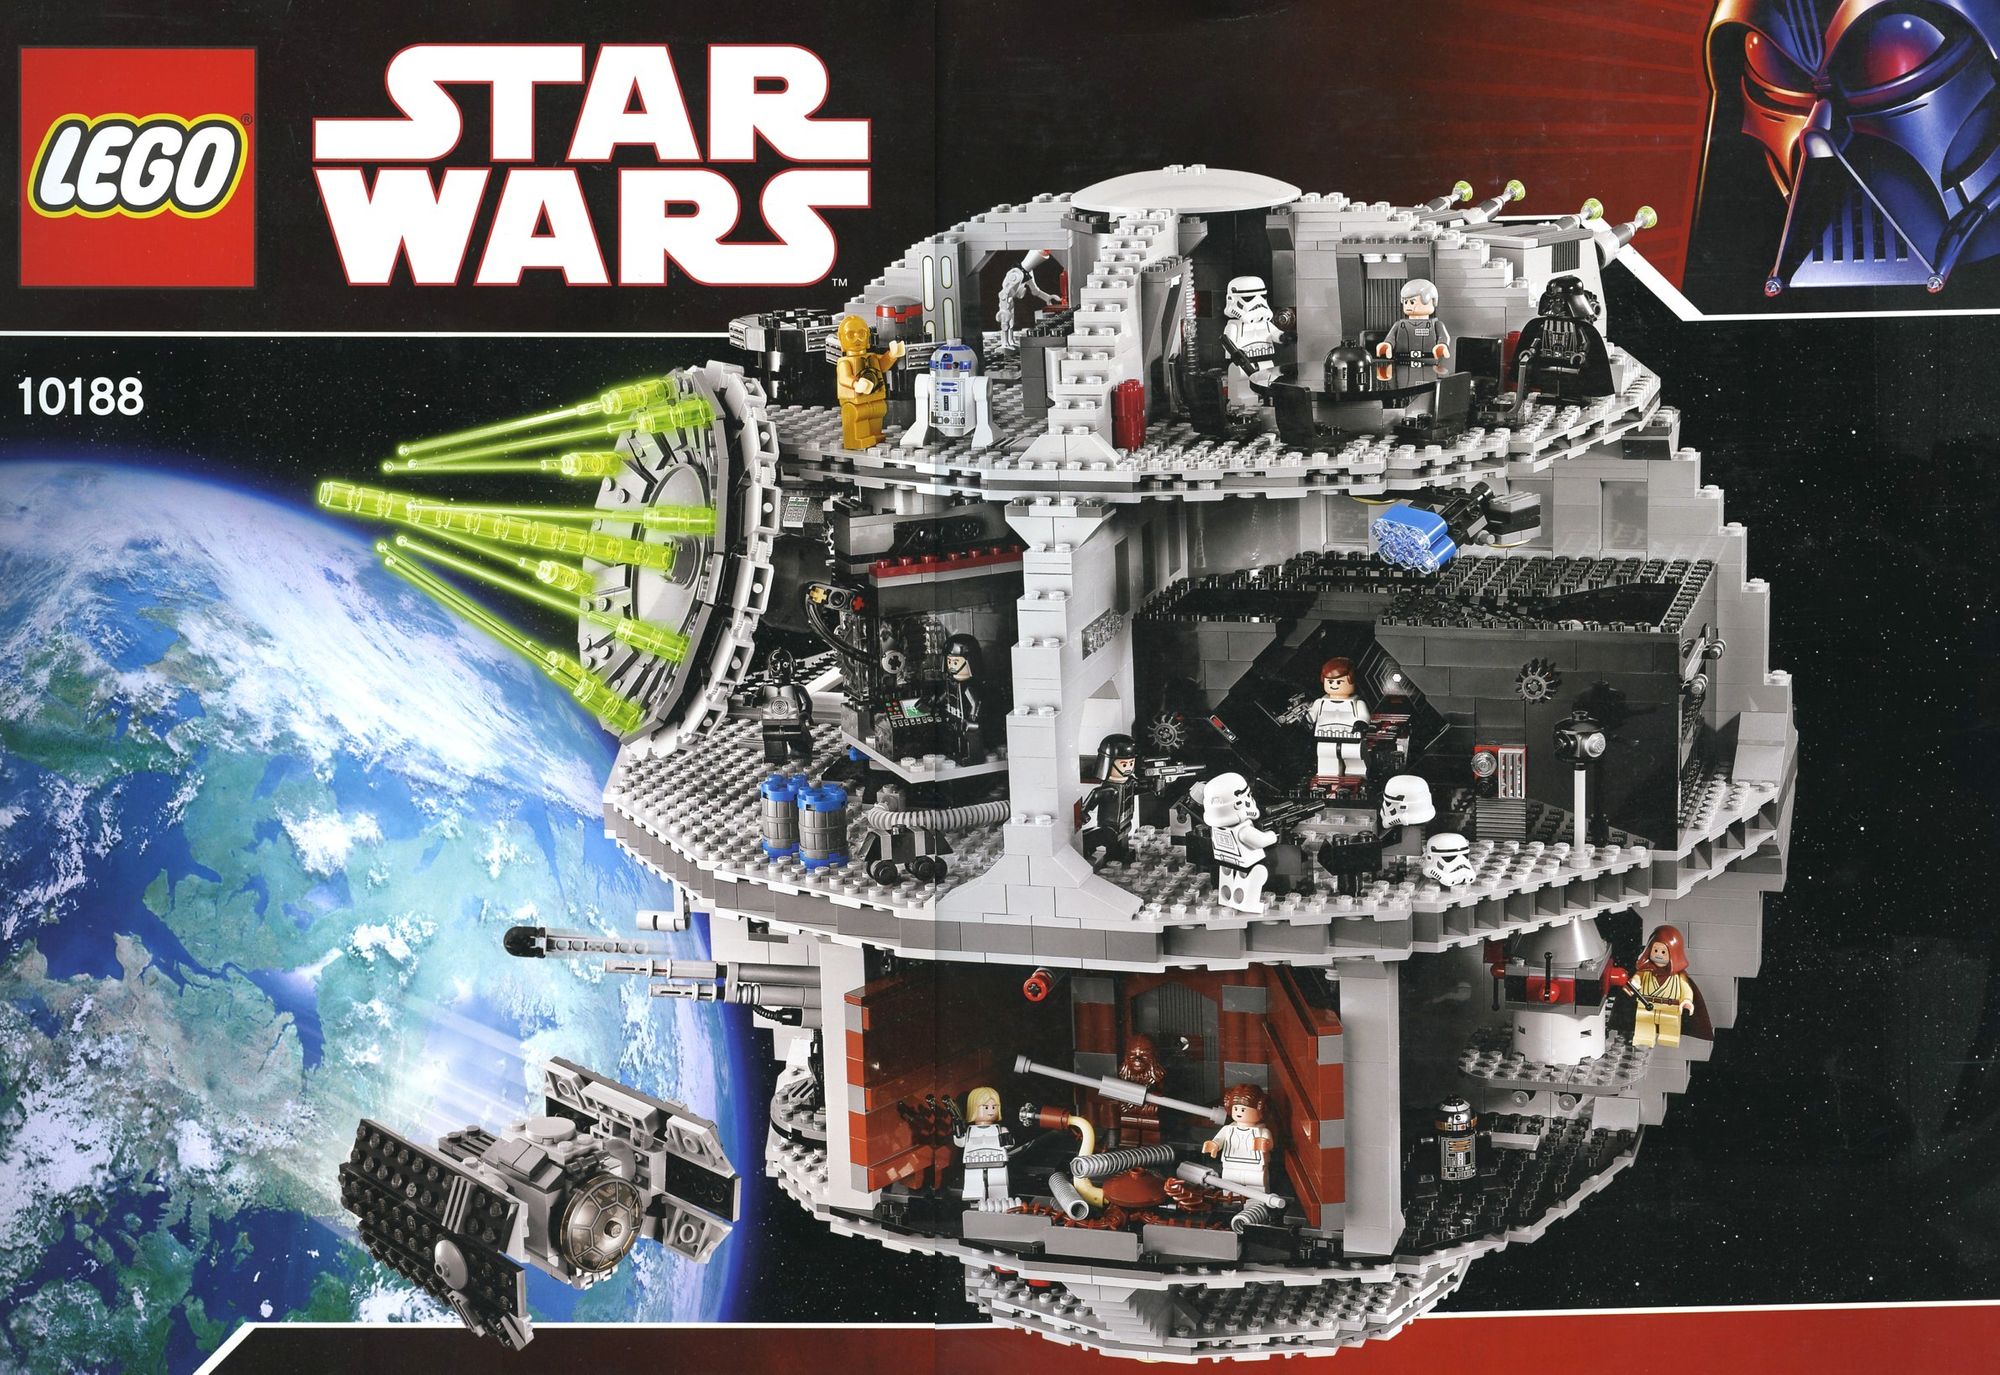 LEGO Star Wars 10188 Death Star